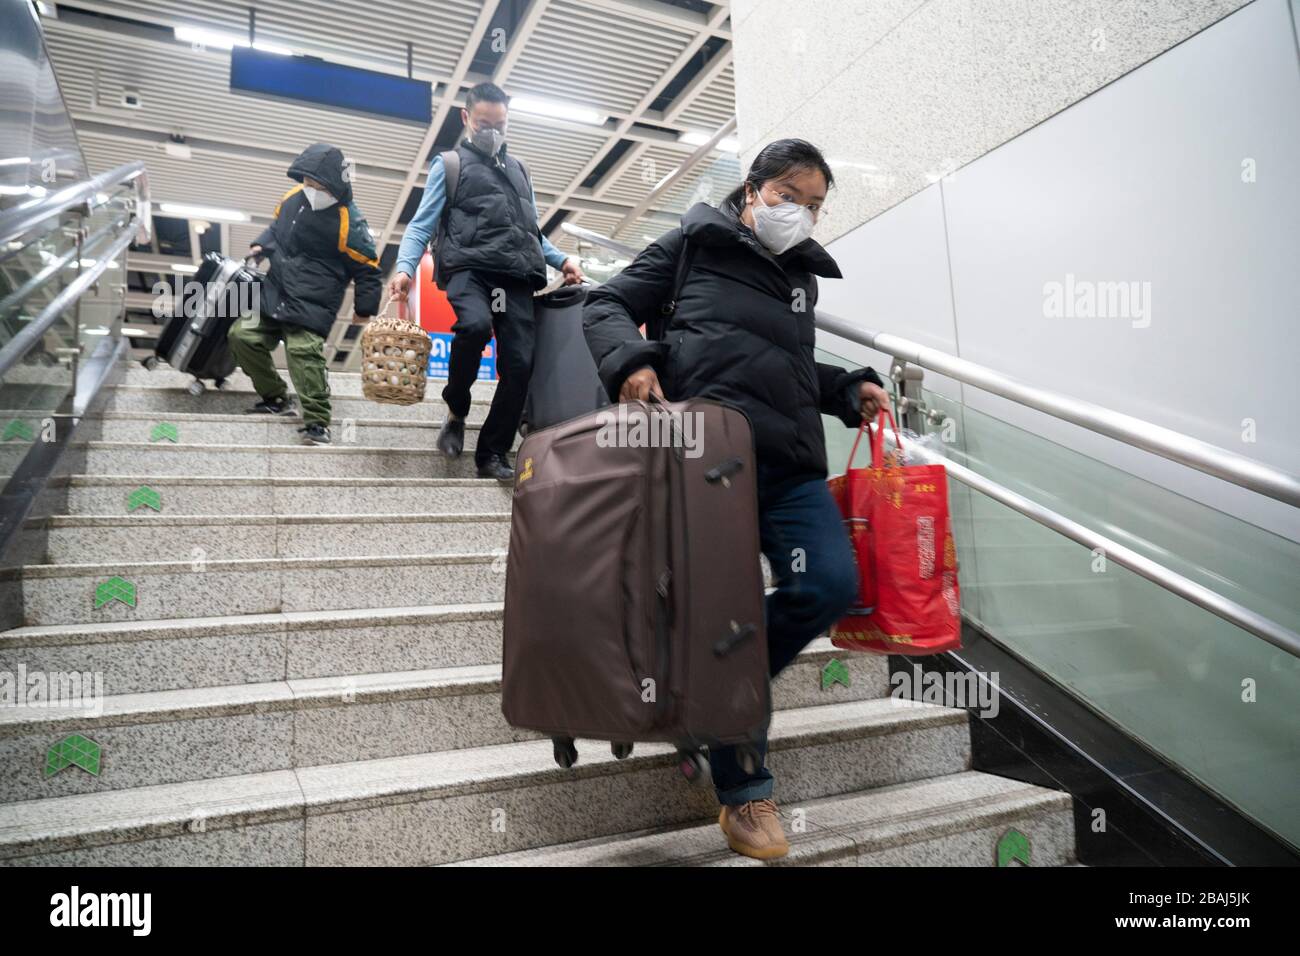 Wuhan, provincia China de Hubei. 28 de marzo de 2020. Los pasajeros van abajo en la estación de metro de la estación de tren de Wuchang, en Wuhan, provincia de Hubei, en el centro de China, el 28 de marzo de 2020. Seis líneas de metro en Wuhan reanudaron sus operaciones a partir del sábado, una nueva señal de que la vida está volviendo gradualmente a la normalidad en la ciudad más afectada. Los pasajeros deben escanear el código QR para registrar nombres reales y realizar comprobaciones de temperatura antes de tomar el metro. Cada tren está equipado con un miembro de la tripulación de seguridad para ayudar a guiar y servir a los pasajeros. Crédito: Cai Yang/Xinhua/Alamy Noticias en vivo Foto de stock